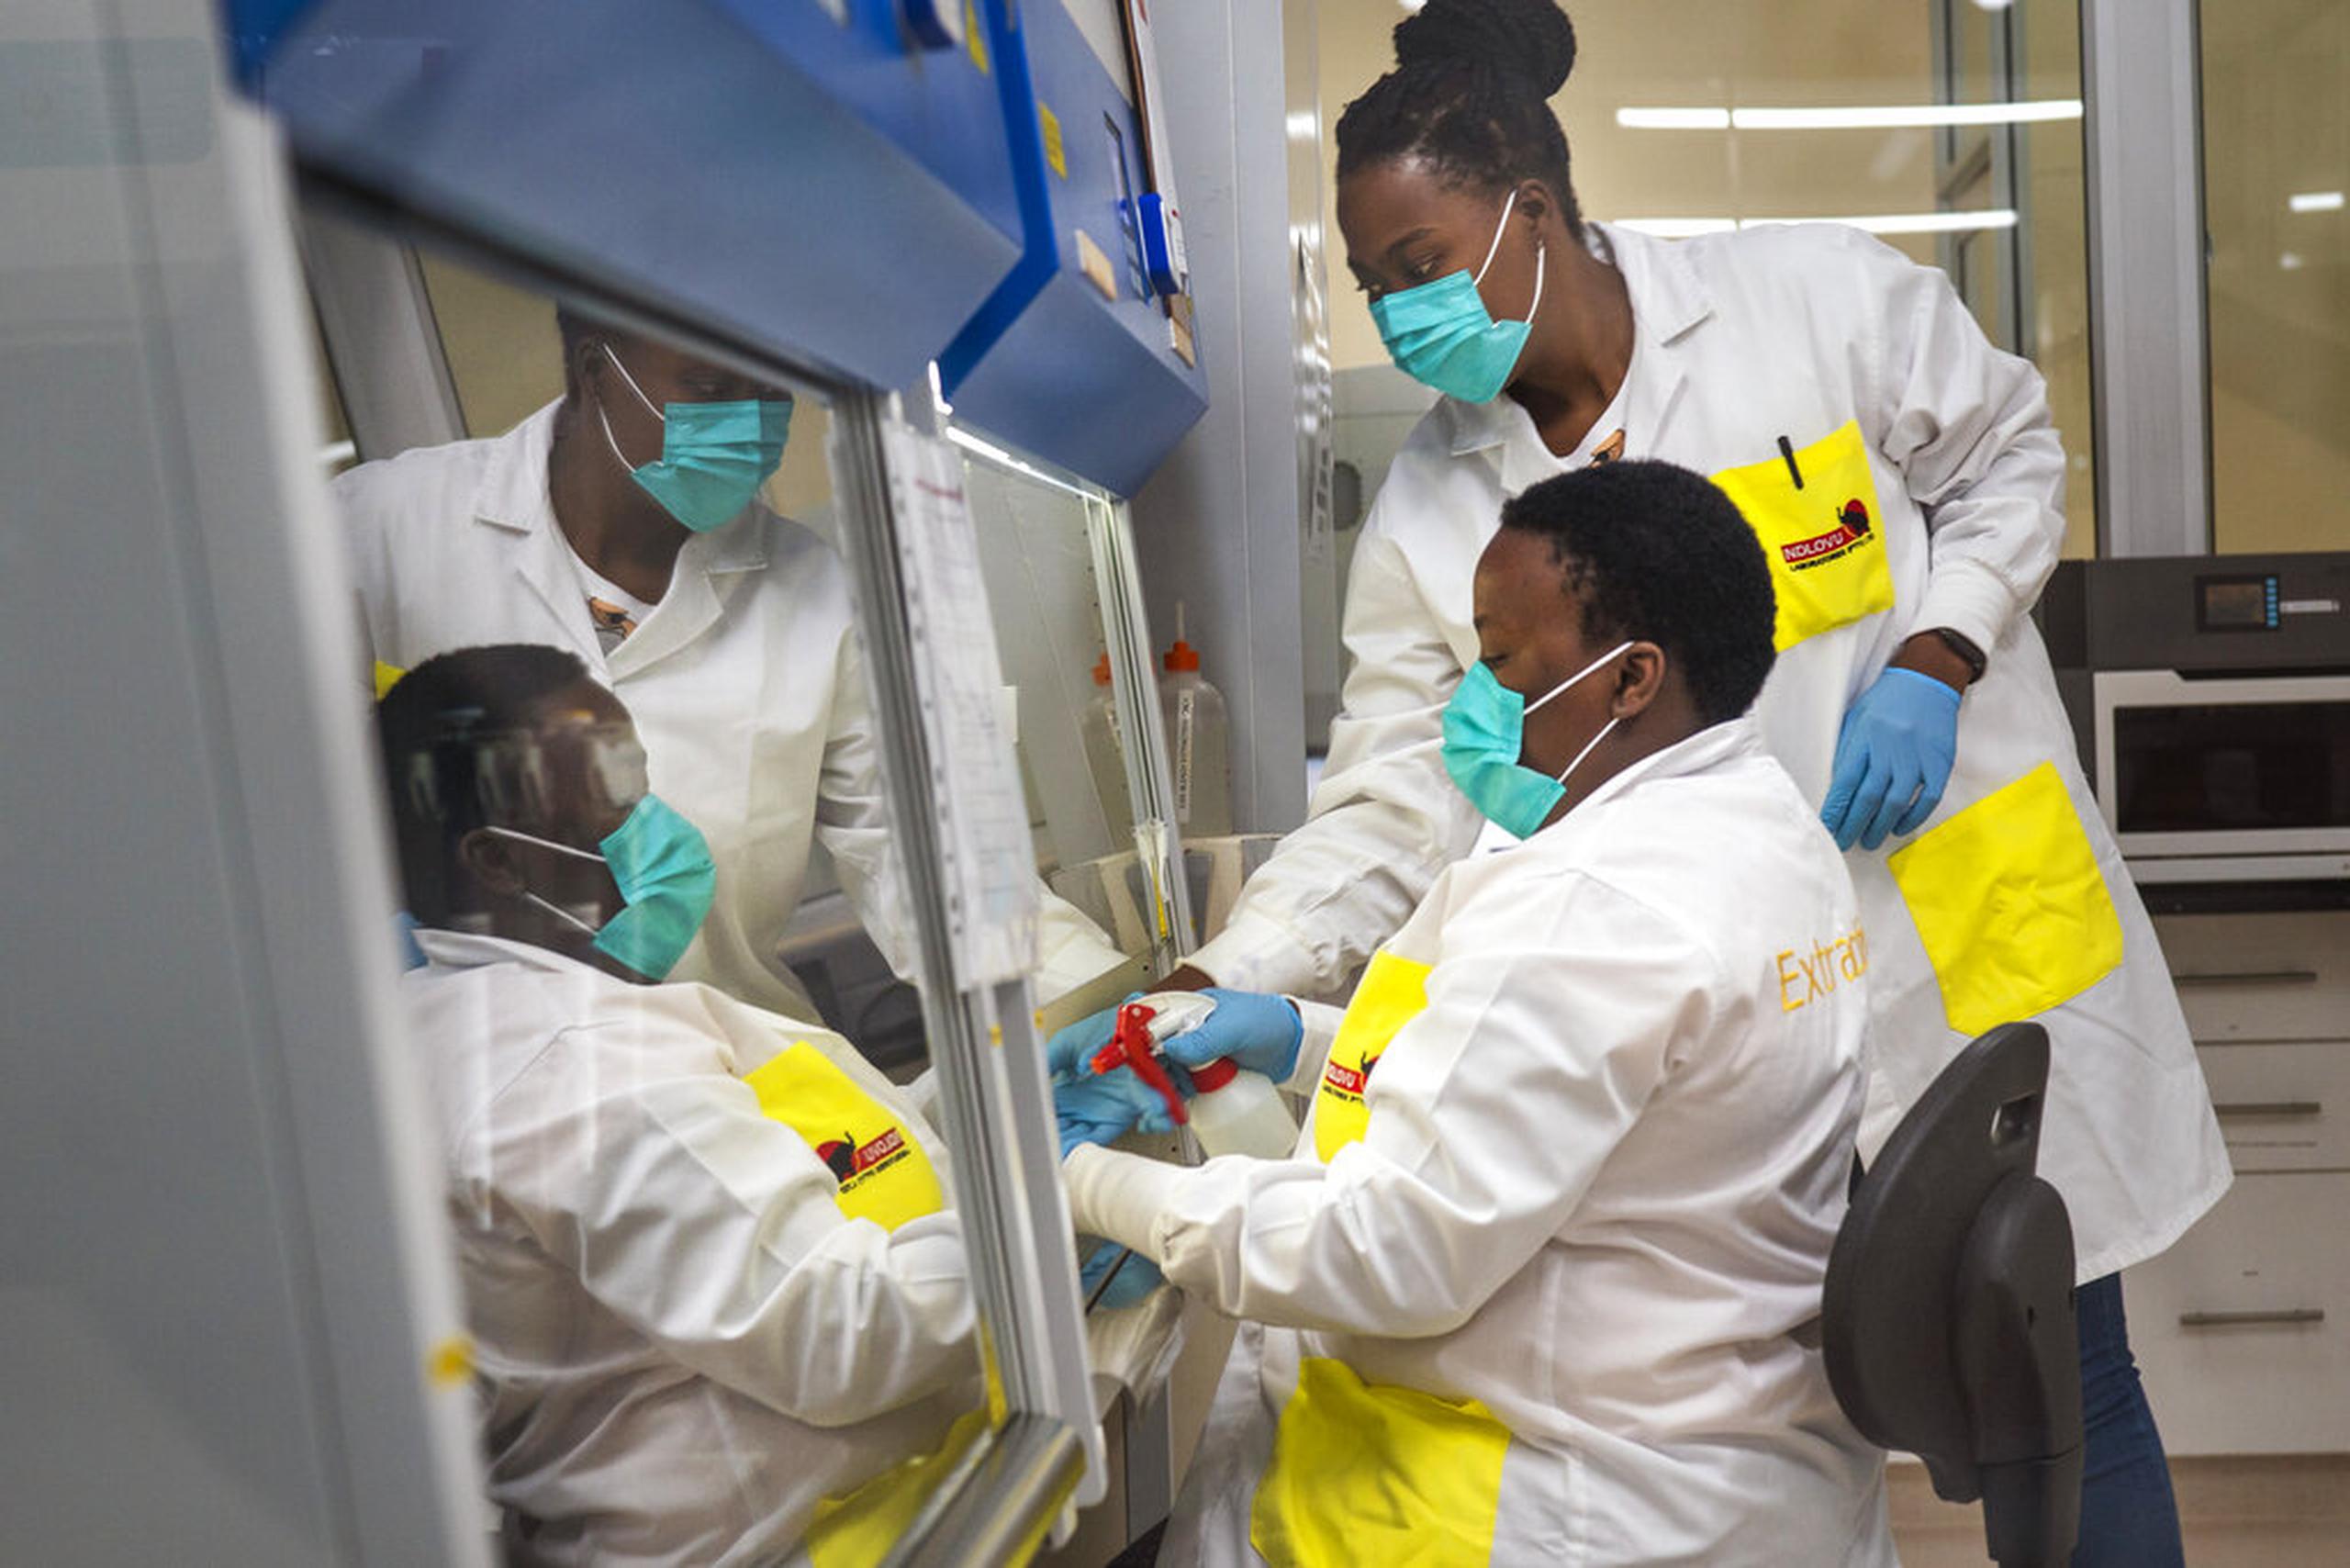 Melva Mlambo y Puseletso Lesofi se preparan para secuenciar muestras de la variante ómicron en el Centro de Investigación Ndlovu, en Elandsdoorn, Sudáfrica, el 8 de diciembre de 2021.